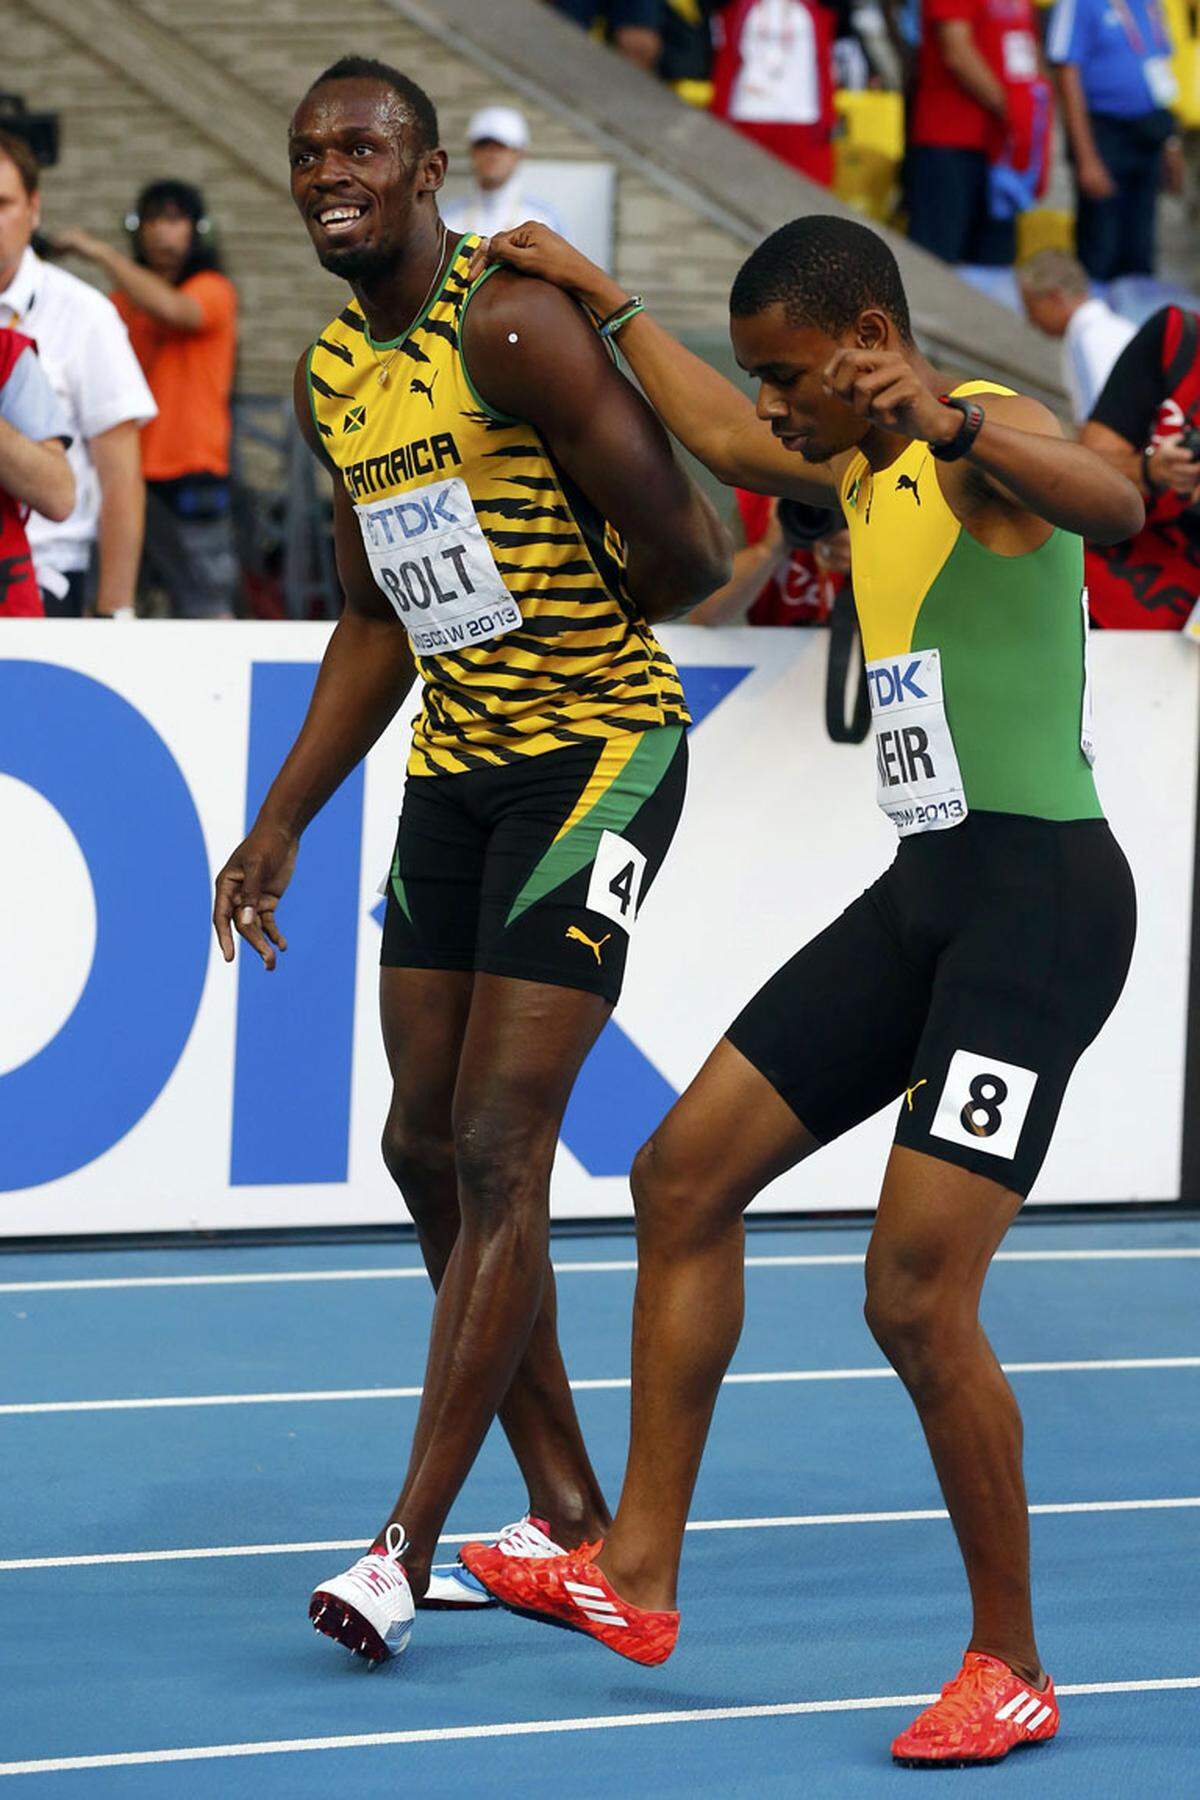 Am letzten Tag in Moskau holt Usain Bolt mit der 4 x 100 Meter-Staffel aus Jamaica sein achtes WM-Gold. Das Quartett um Superstar Bolt ist abermals unschlagbar. In der Weltjahresbestzeit 37,36 Sekunden werden die USA um 30 und die Kanadier um 56 Hundertstel distanziert. Auch die jamaikanische Frauenstaffel mit der zweifachen Goldmedaillengewinnerin Fraser-Pryze als Schlussläuferin demoliert die gesamte Konkorrenz und gewinnt mit Rekordvorsprung von 1,44 Sekunden. Die Zeit von 41,29 Sekunden stellt Meisterschaftsrekord dar. Frankreich holt zur Überraschung vieler Silber vor den enttäuschenden Amerikanerinnen, die bei der ersten Staffelübergabe einen ganz groben Schnitzer haben.